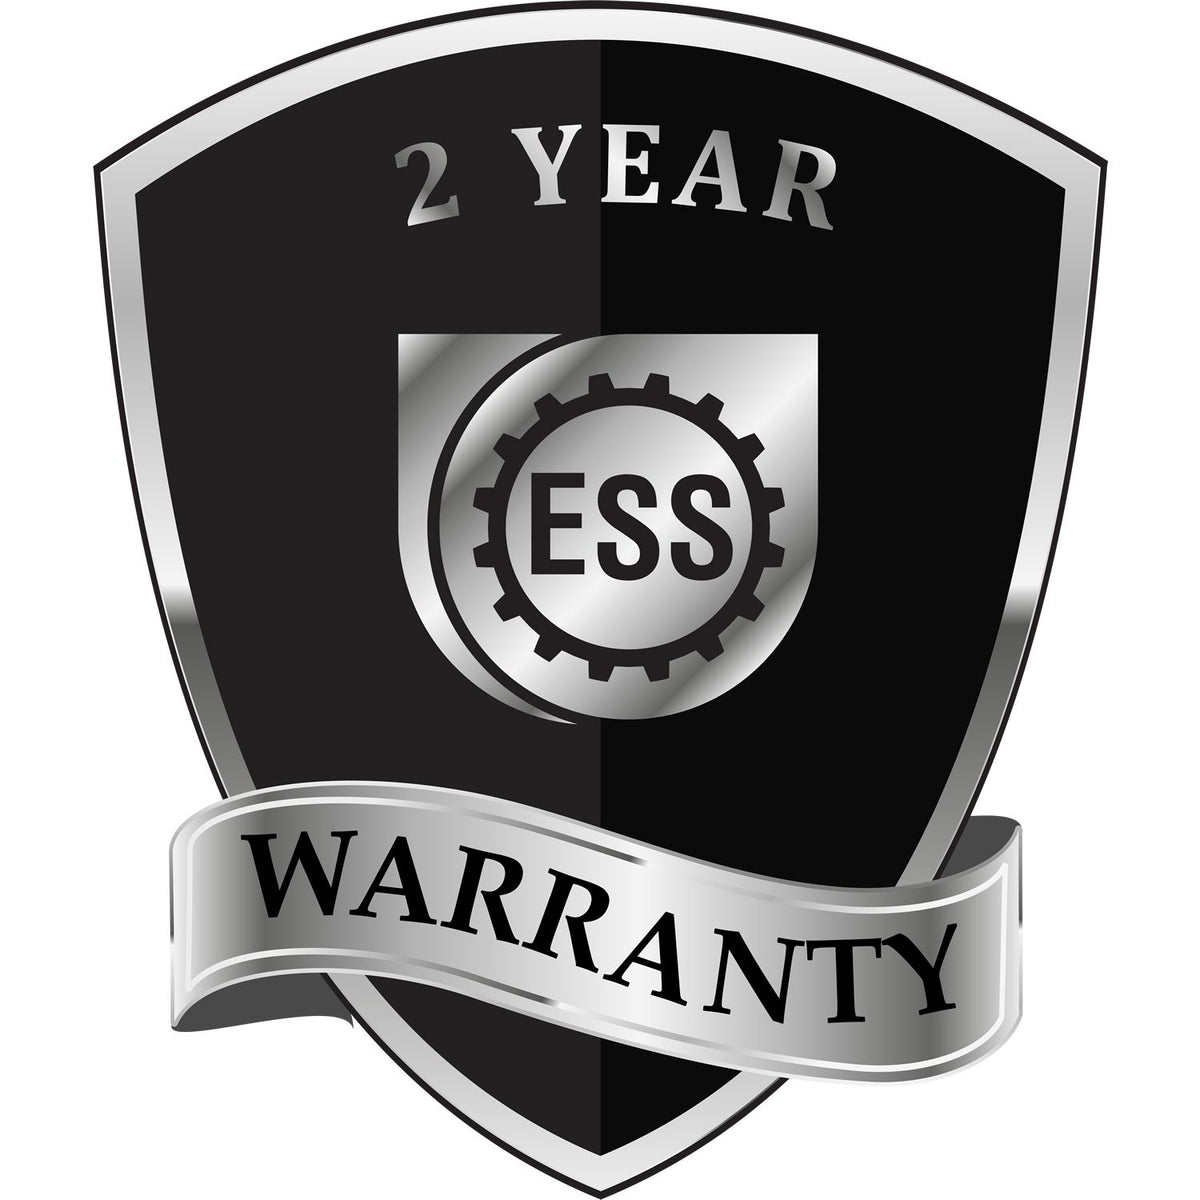 A black and silver badge or emblem showing warranty information for the Hybrid Nebraska Land Surveyor Seal